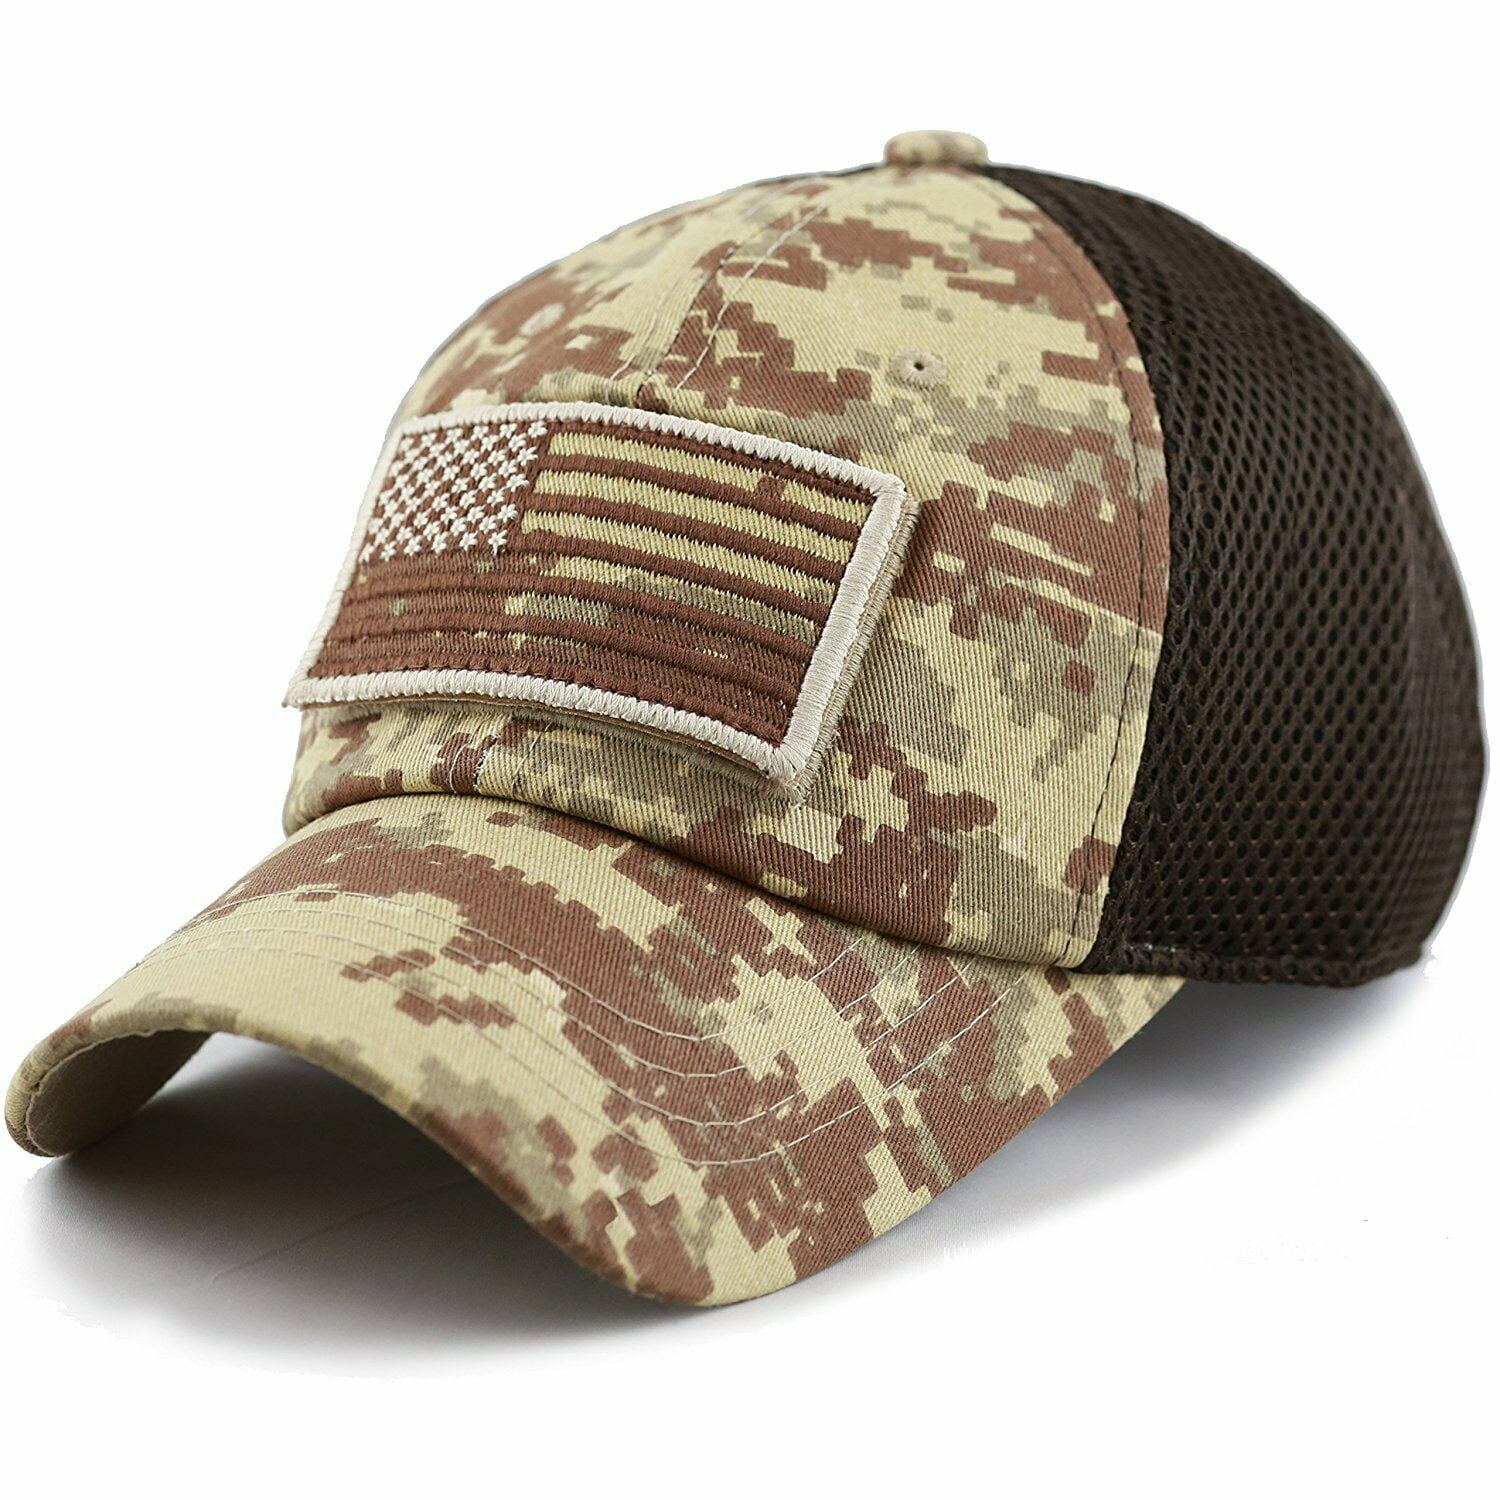 Ma Croix Us Military Cap American Flag Hat Detachable Baseball Mesh Tactical Army Camo 7fc044 Desert Camo Walmart Com Walmart Com